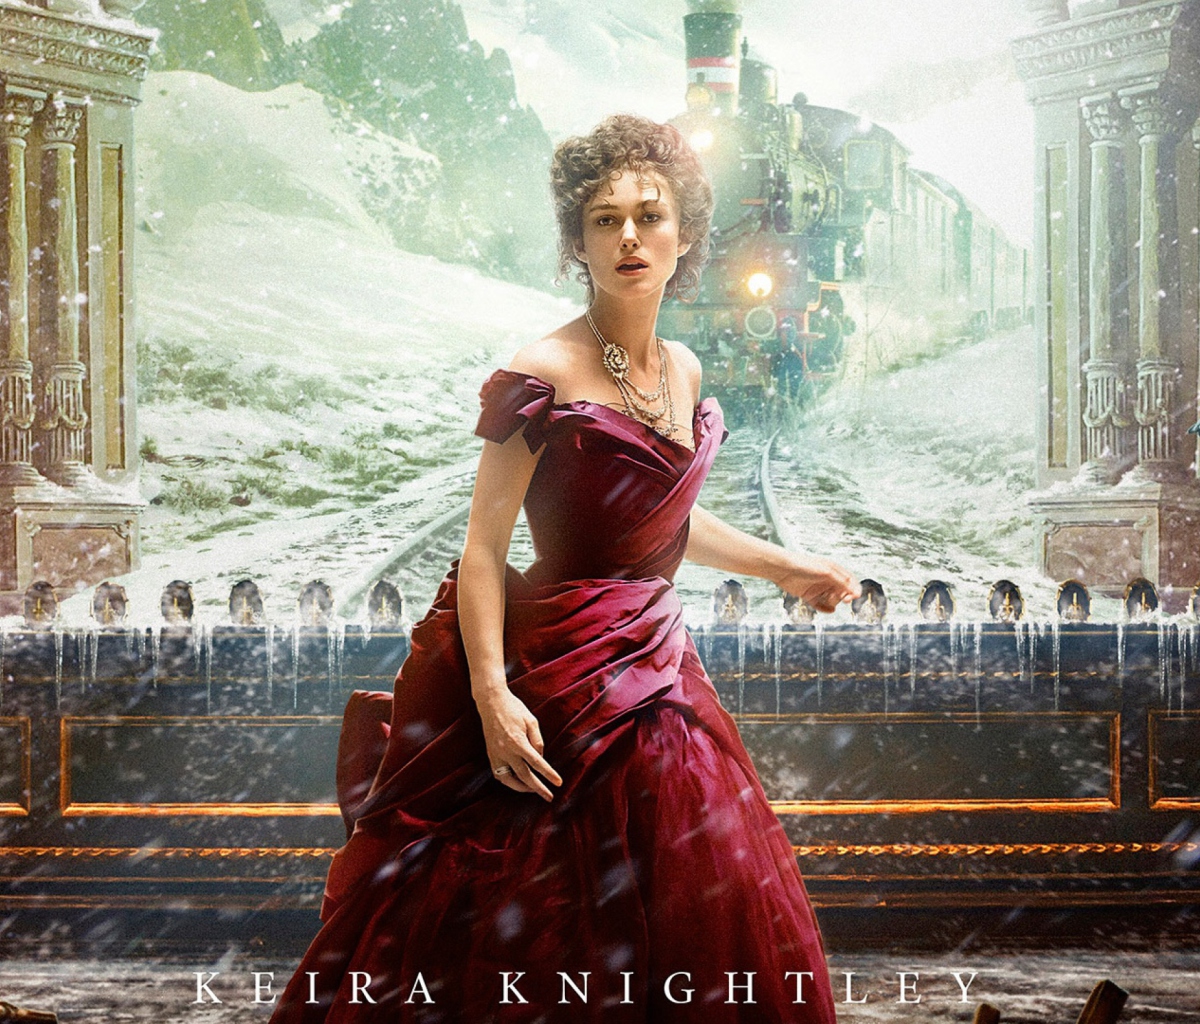 Das Keira Knightley As Anna Karenina Wallpaper 1200x1024